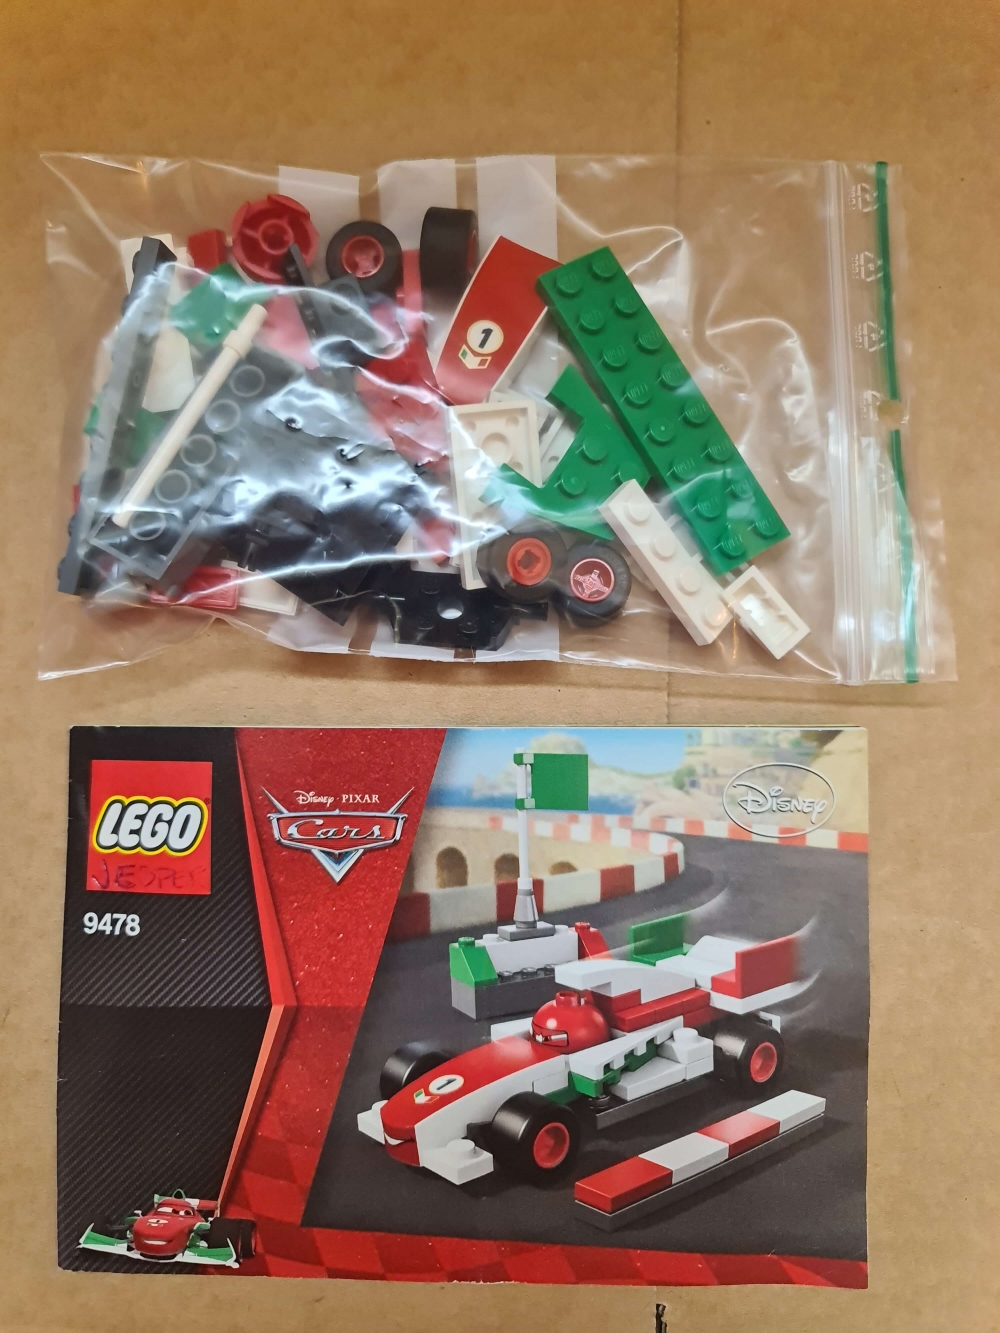 Sett 9478 fra Lego Cars : Cars 2 serien.
Meget pent.
Komplett med manual.